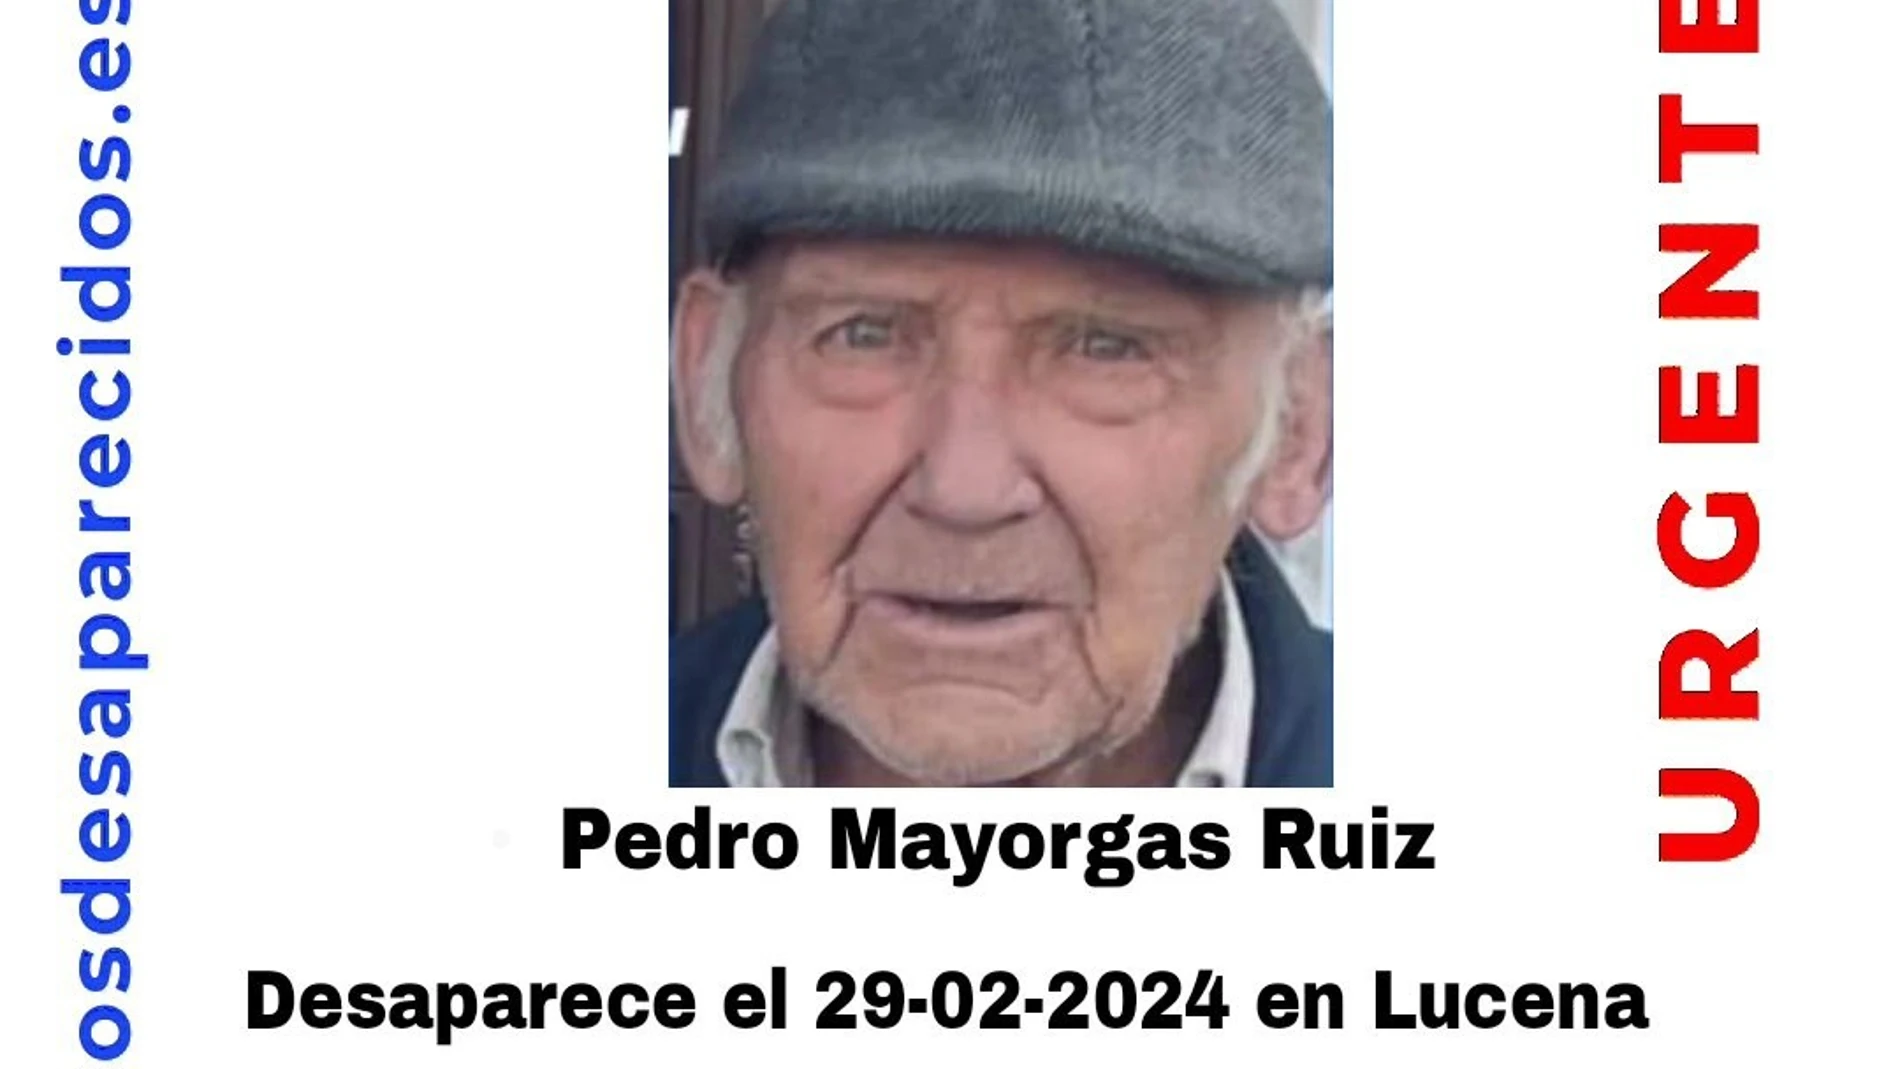 Pedro Mayorgas Ruiz, el vecino de 83 años desaparecido desde el jueves 29 de febrero en Lucena.SOS DESAPARECIDOS/AYUNTAMIENTO D05/03/2024